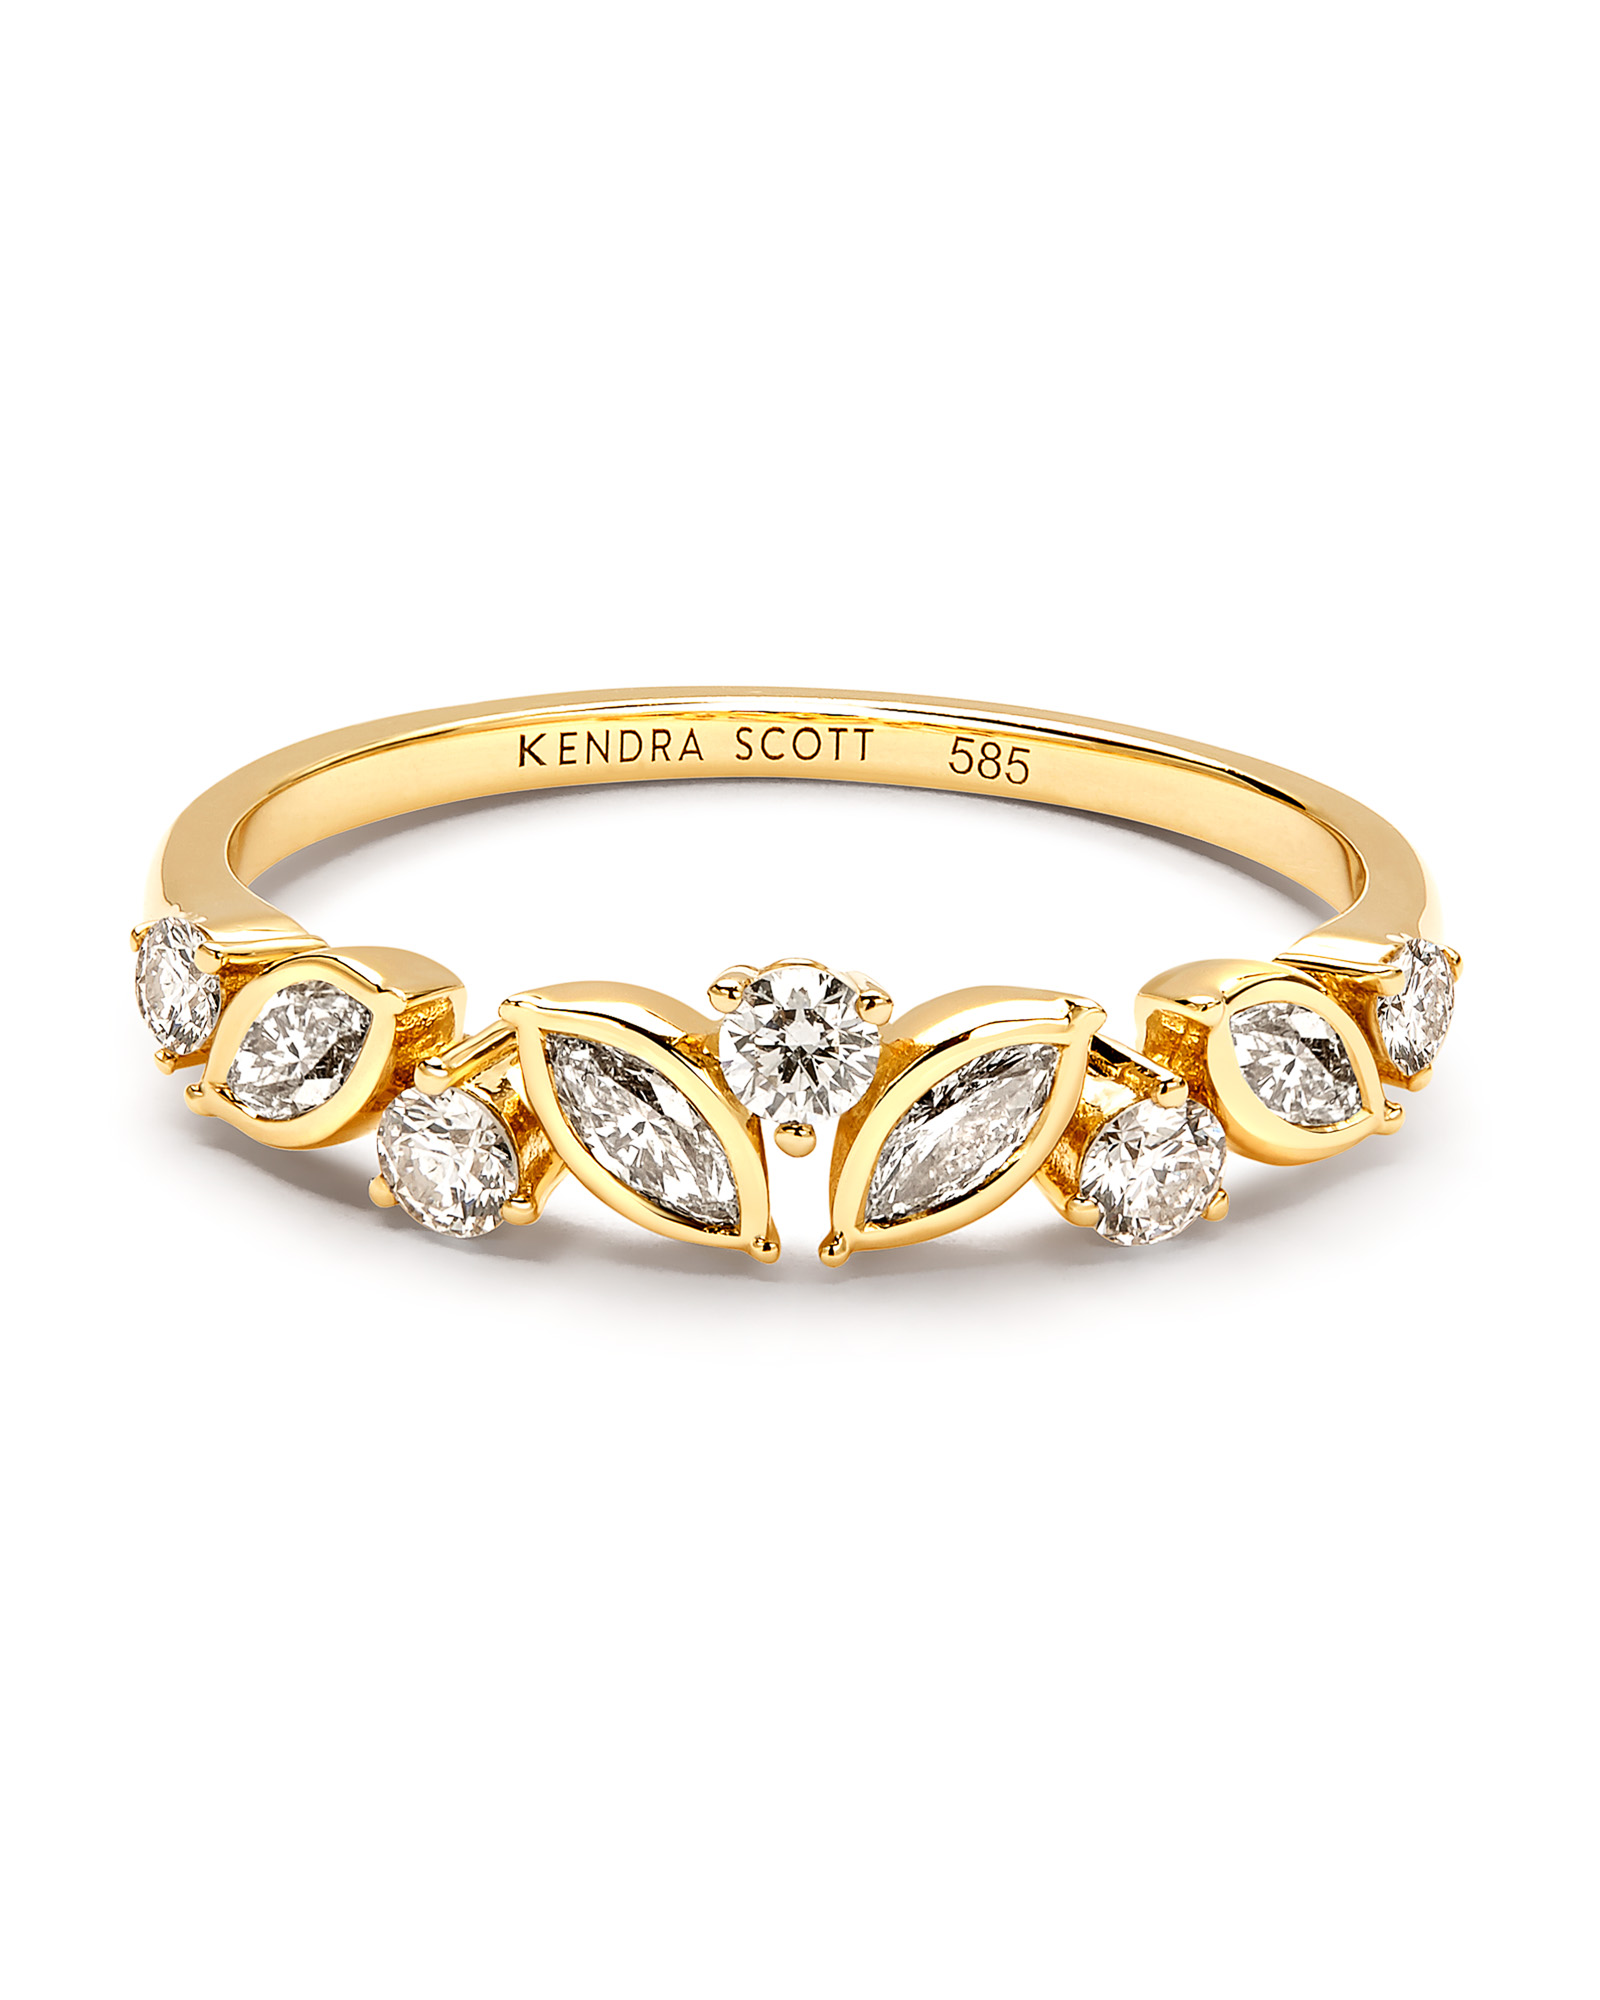 Becca 14k Yellow Gold Band Ring in White Diamond | Kendra Scott